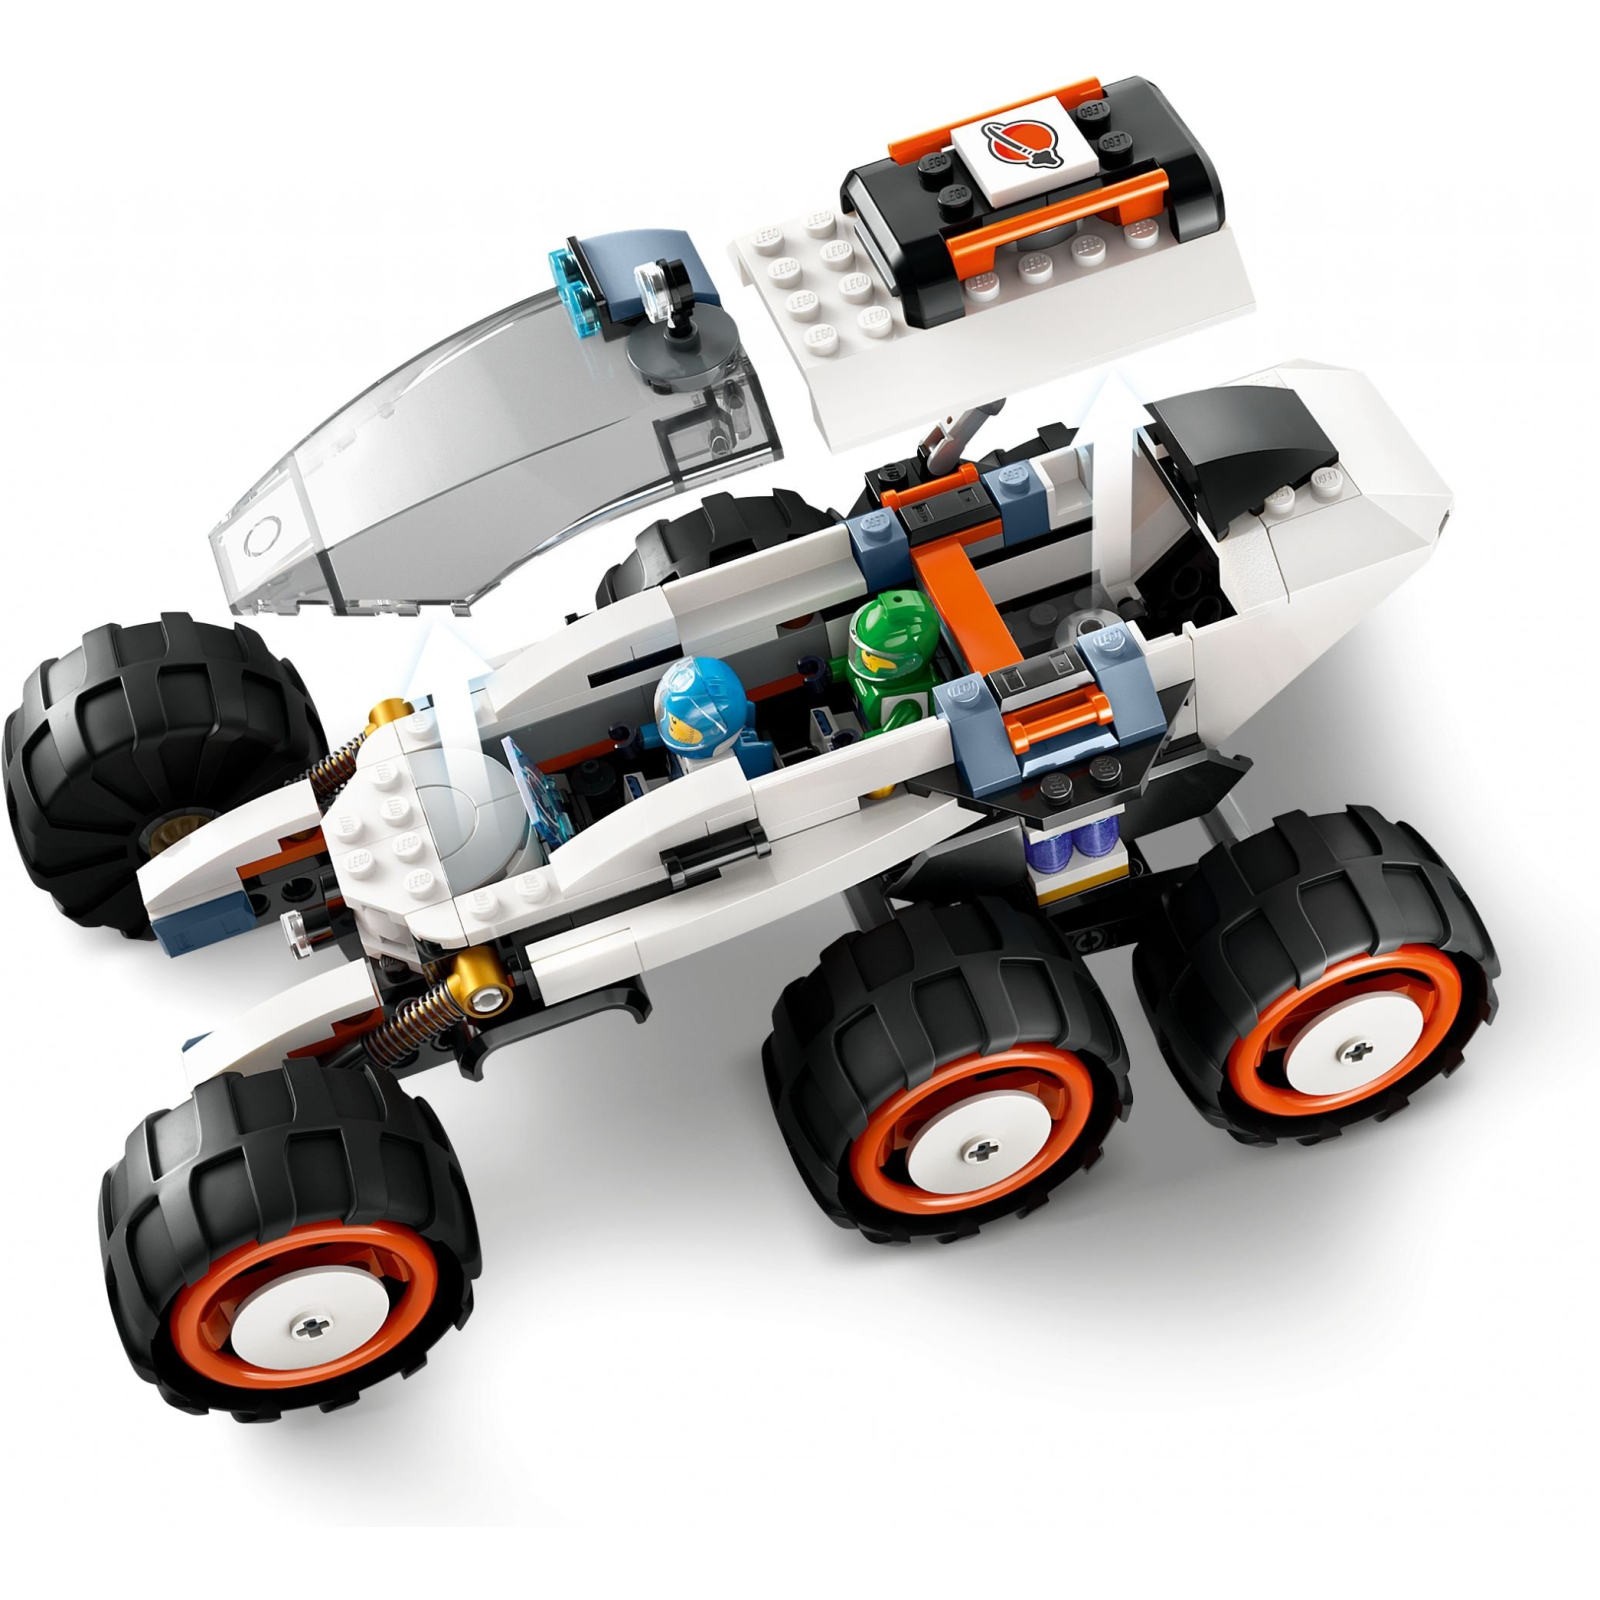 Конструктор LEGO City Космический исследовательский вездеход и инопланетная жизнь 311 деталей (60431) изображение 5